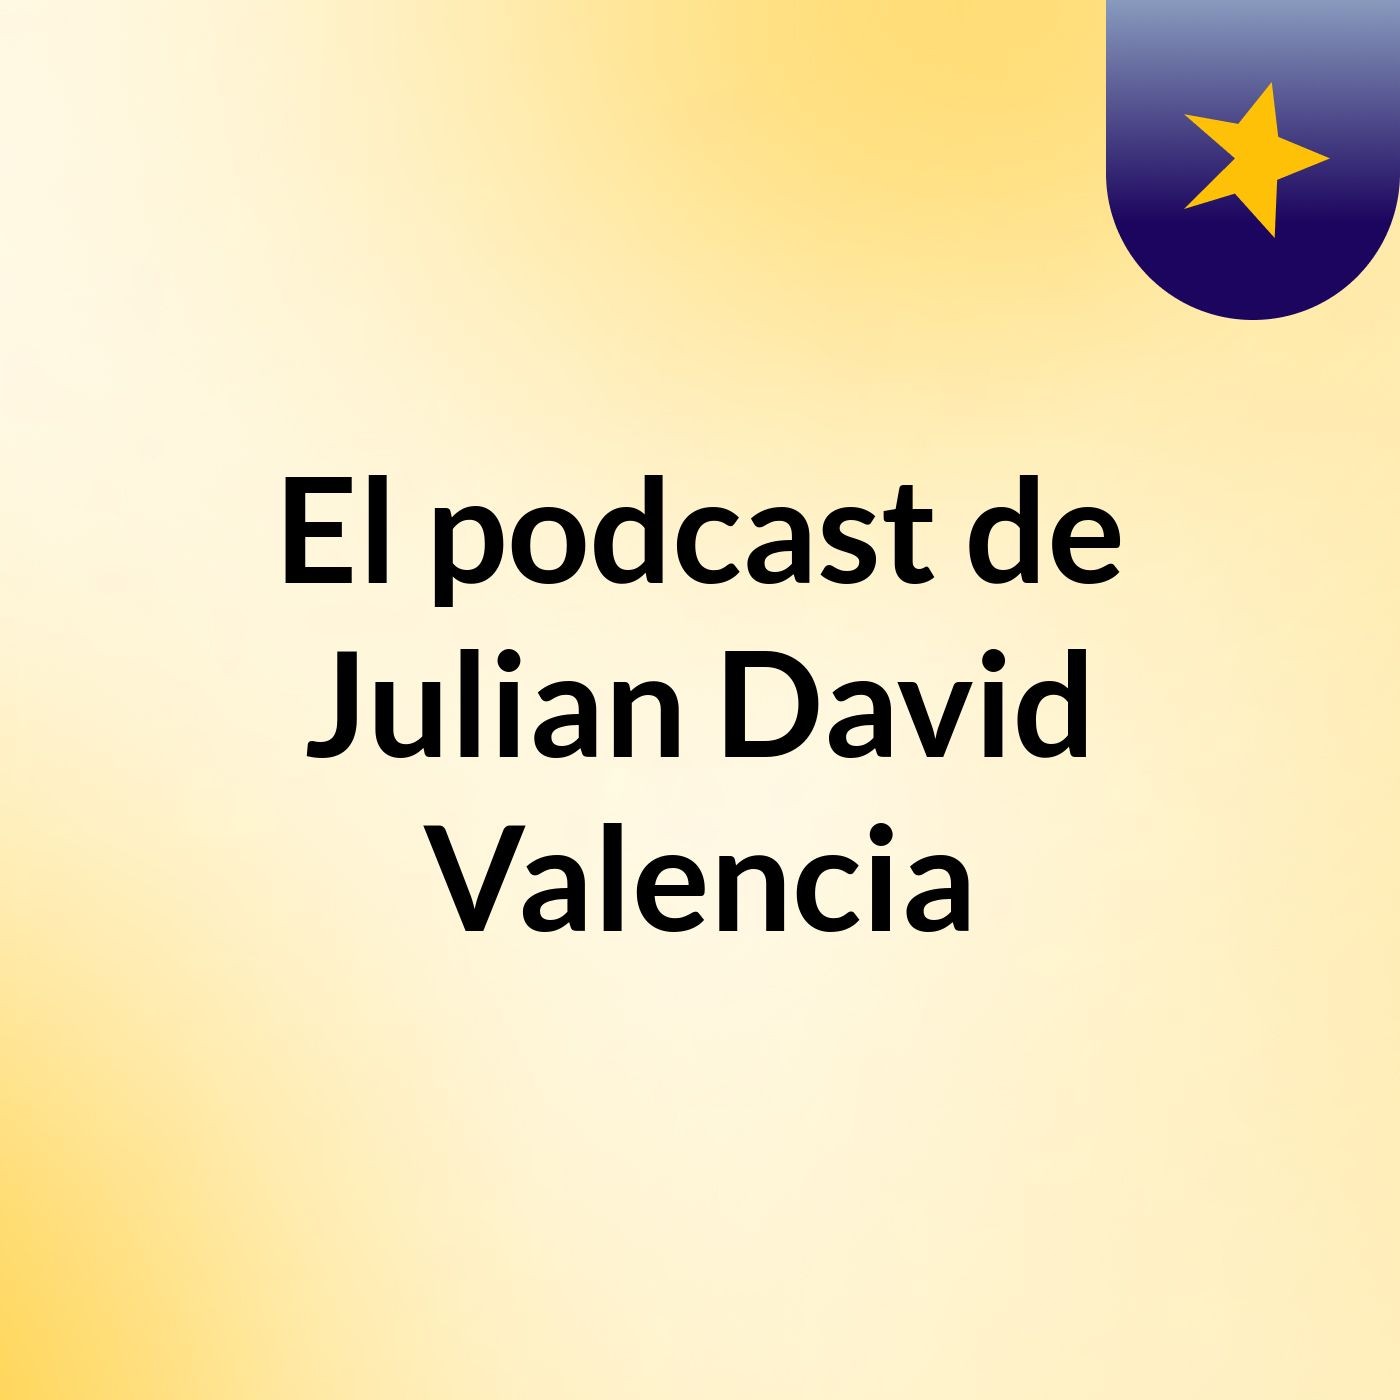 El podcast de Julian David Valencia